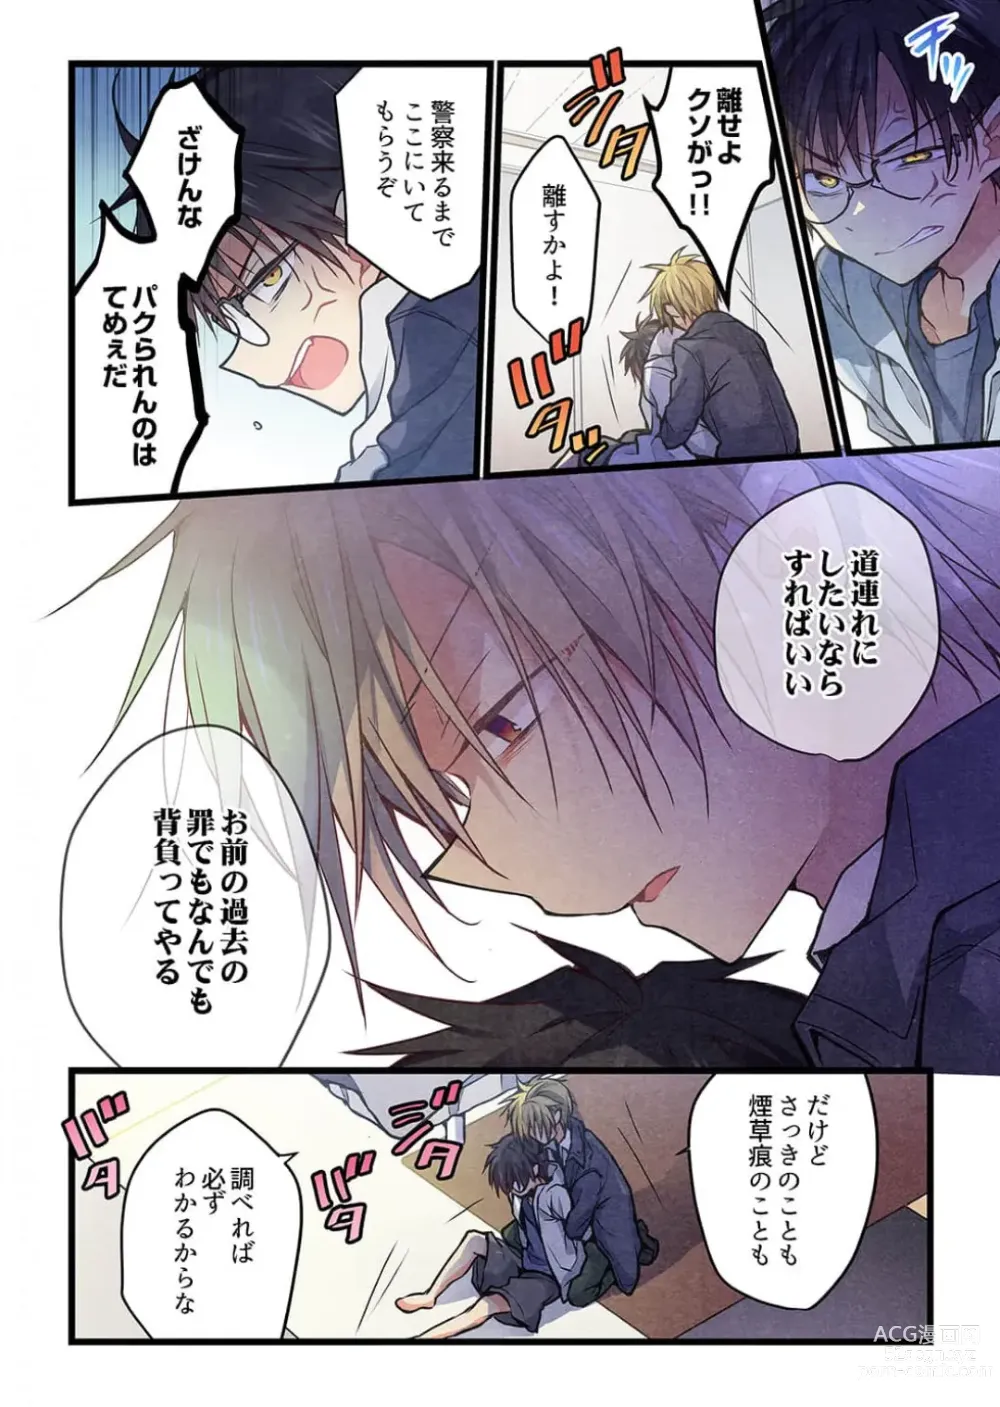 Page 7 of manga Kimi ga Sore o Ai to Yonde mo - Even if you call it love 38